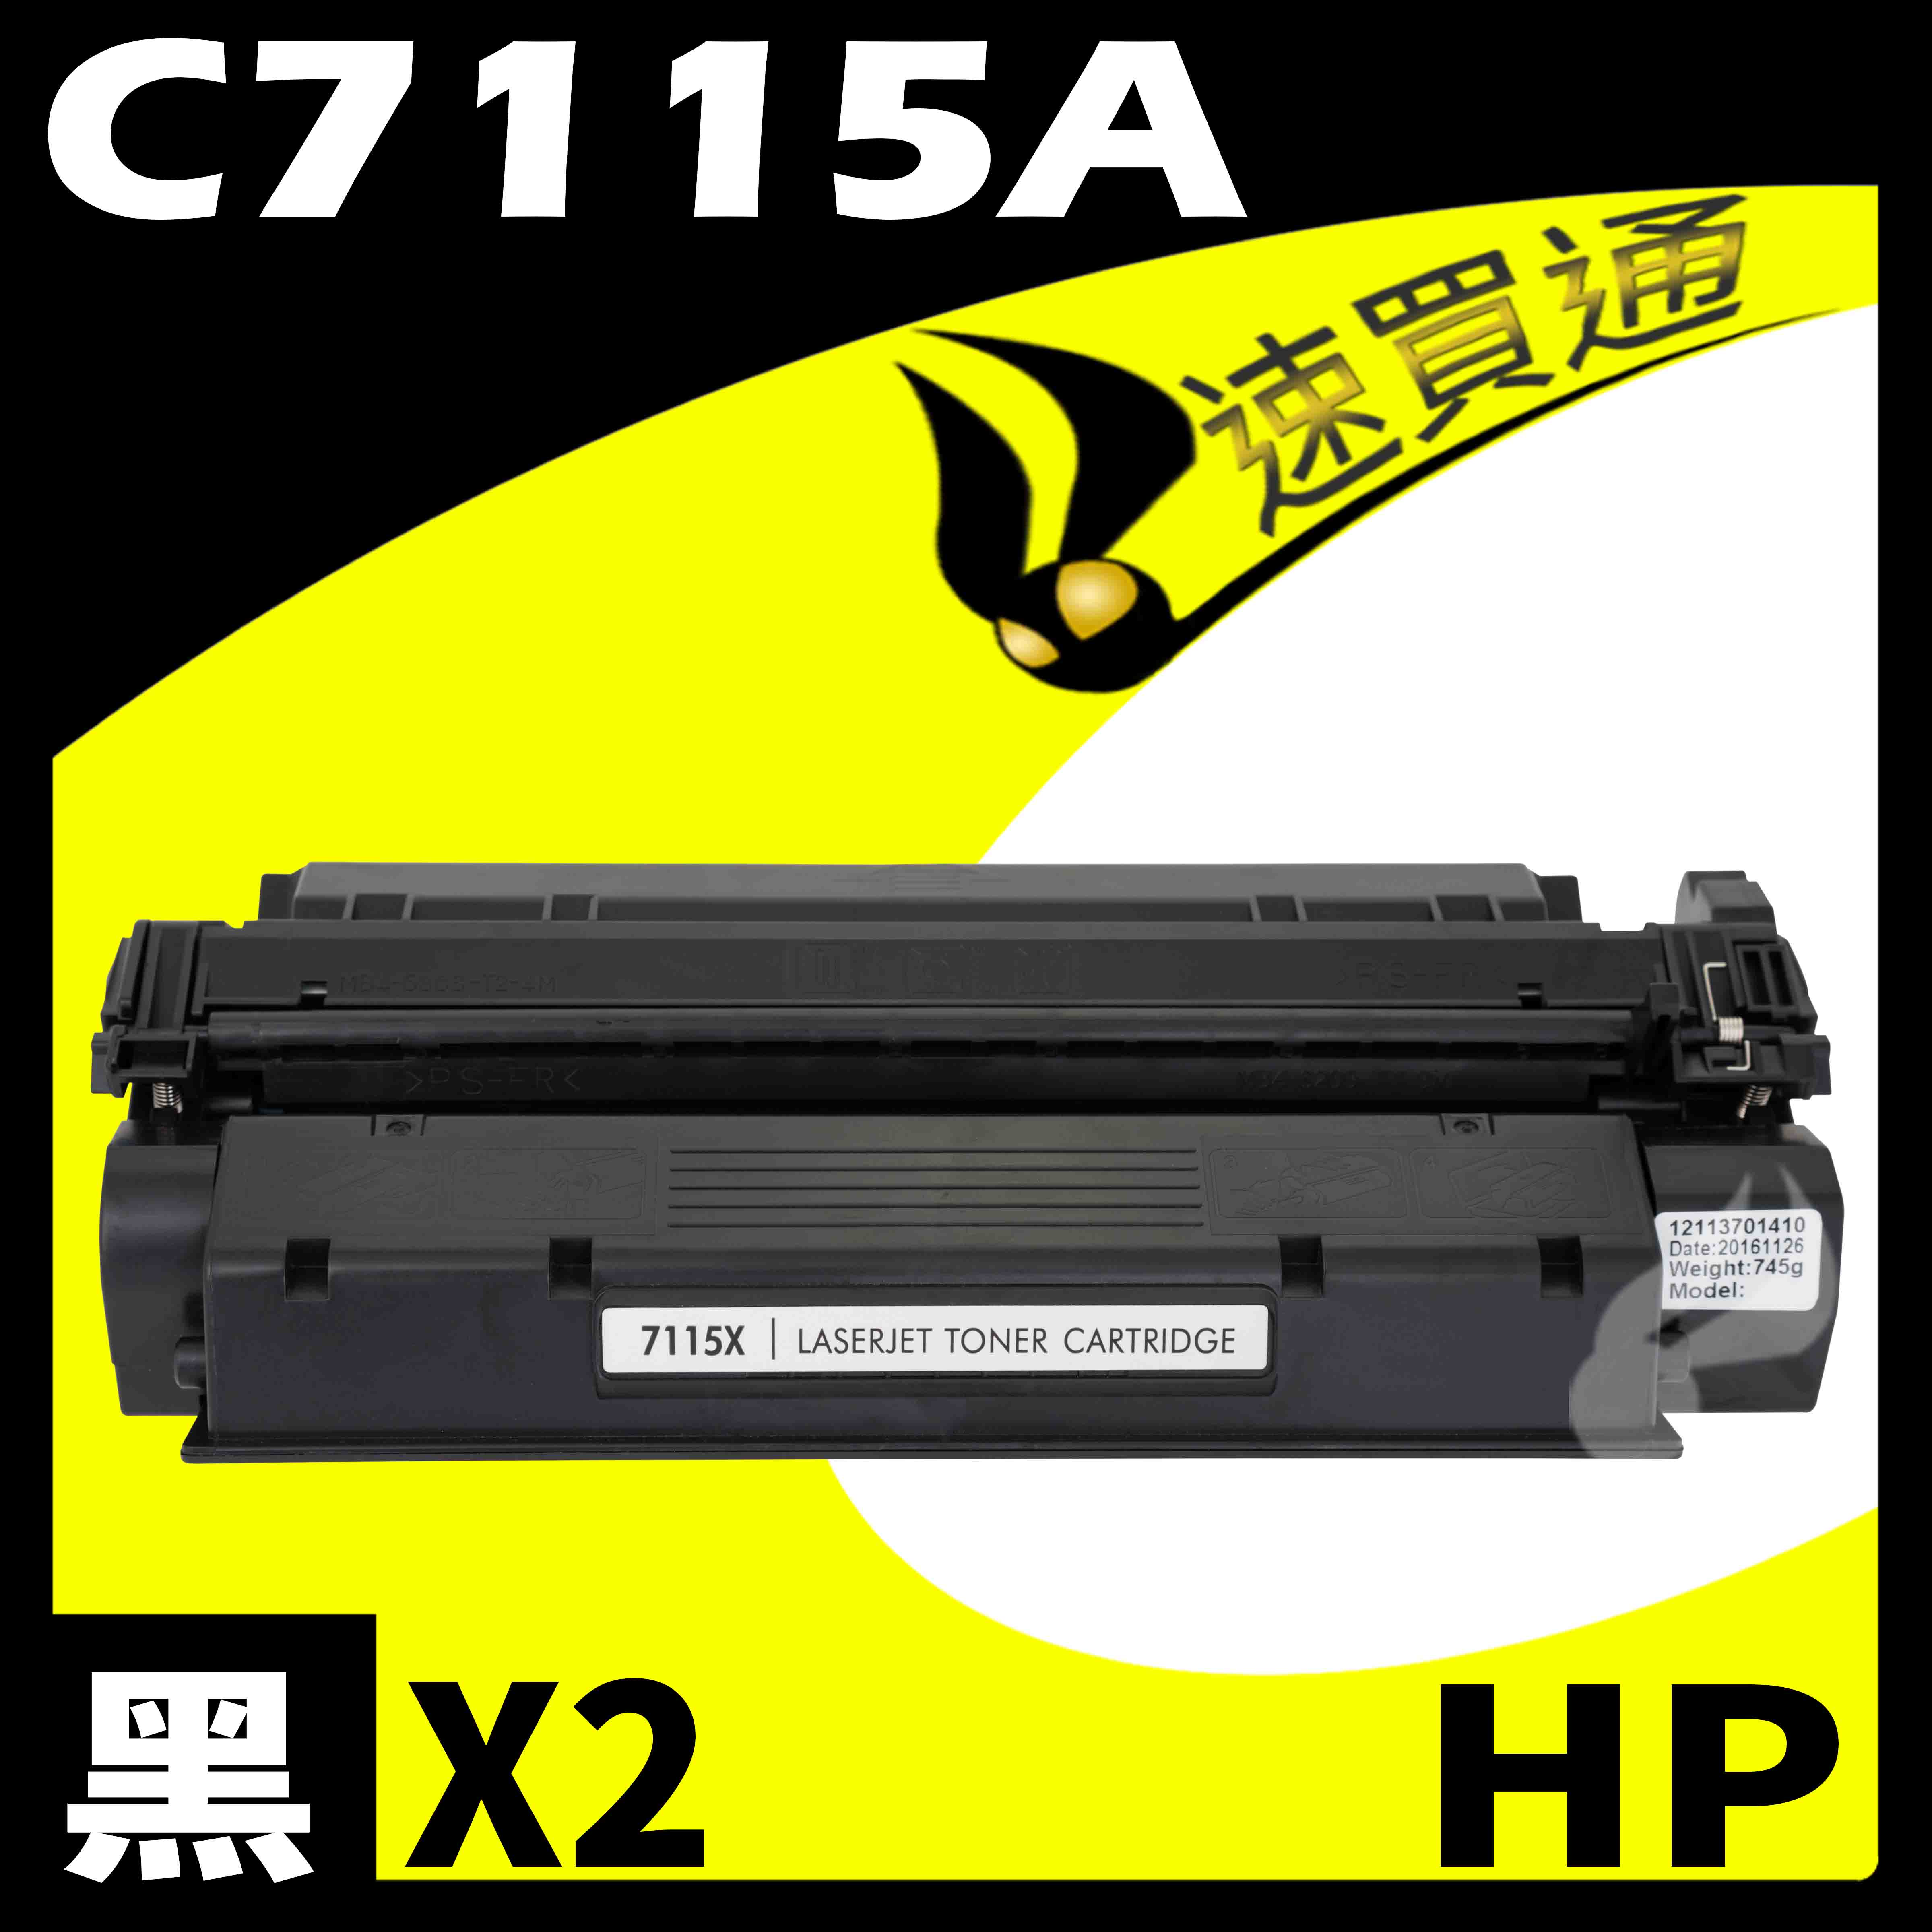 【速買通】超值2件組 HP C7115A 相容碳粉匣